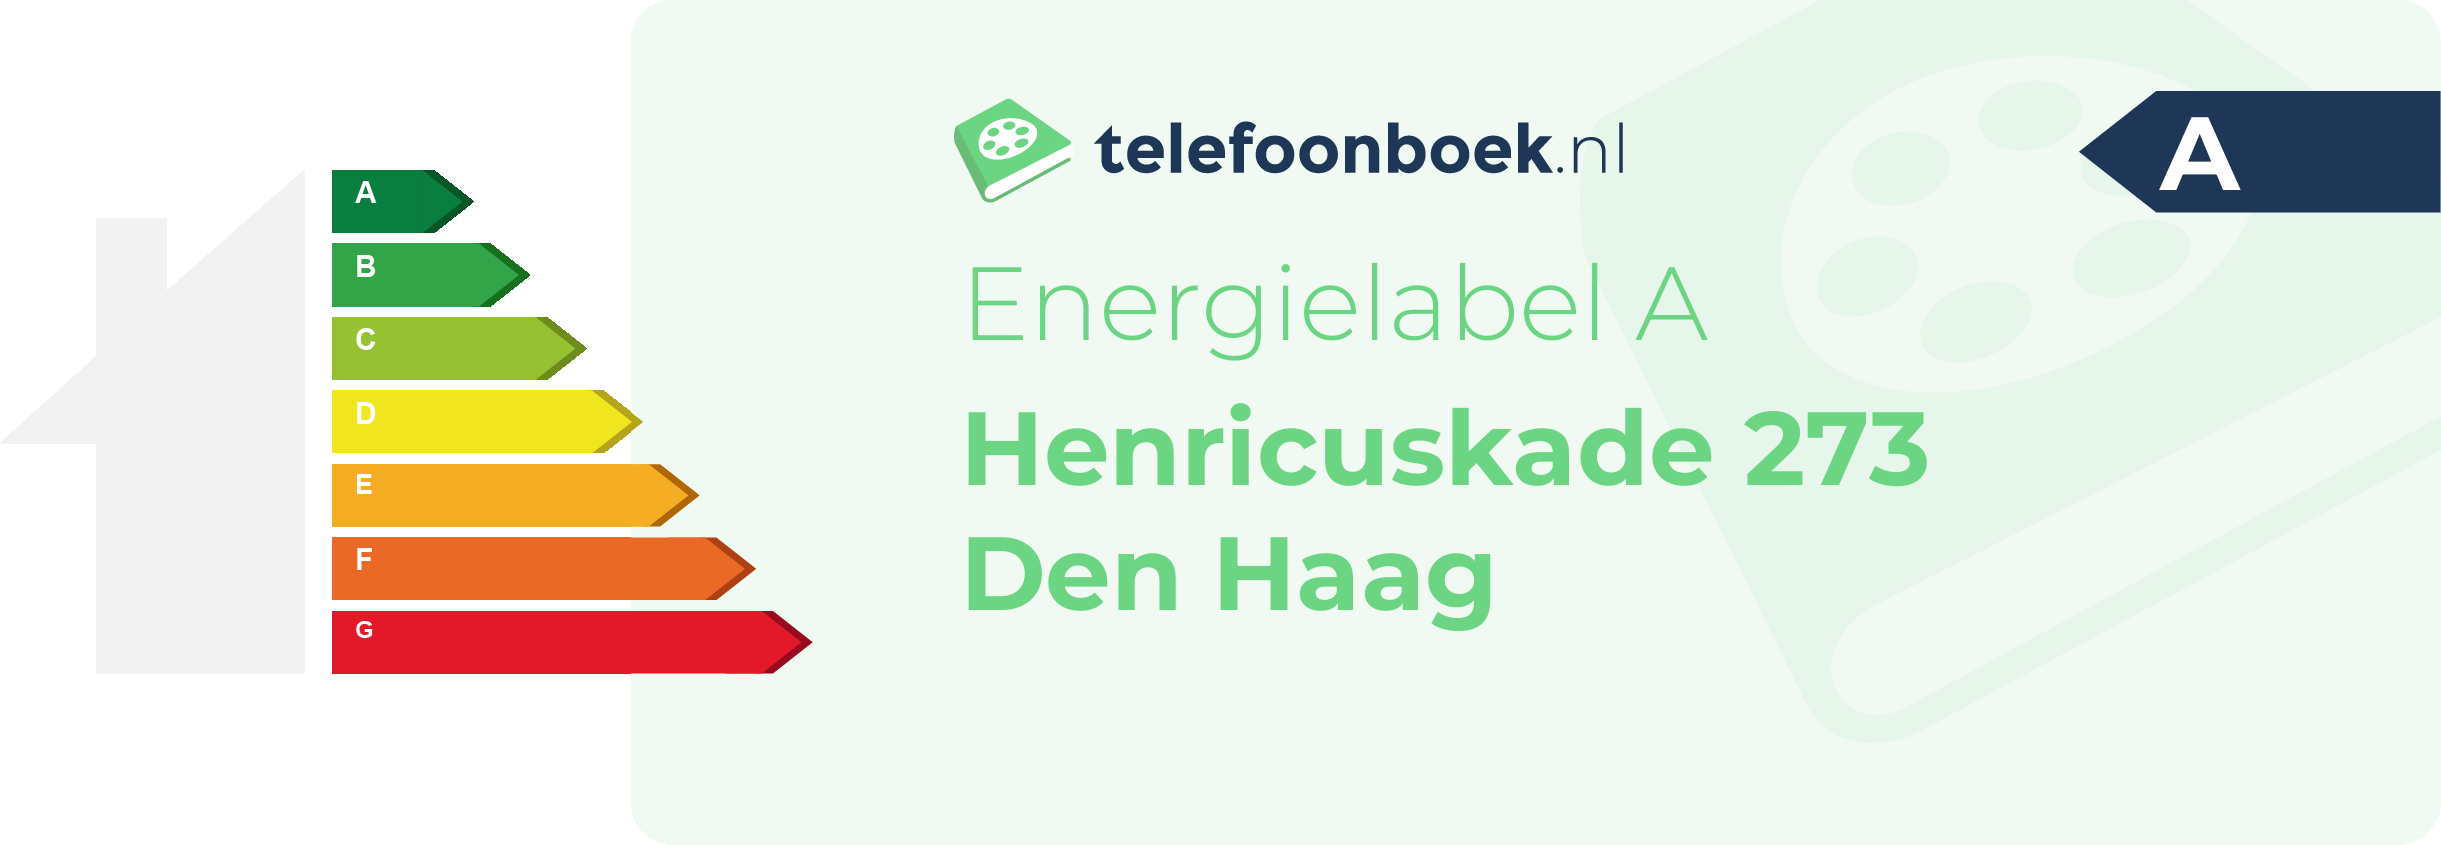 Energielabel Henricuskade 273 Den Haag